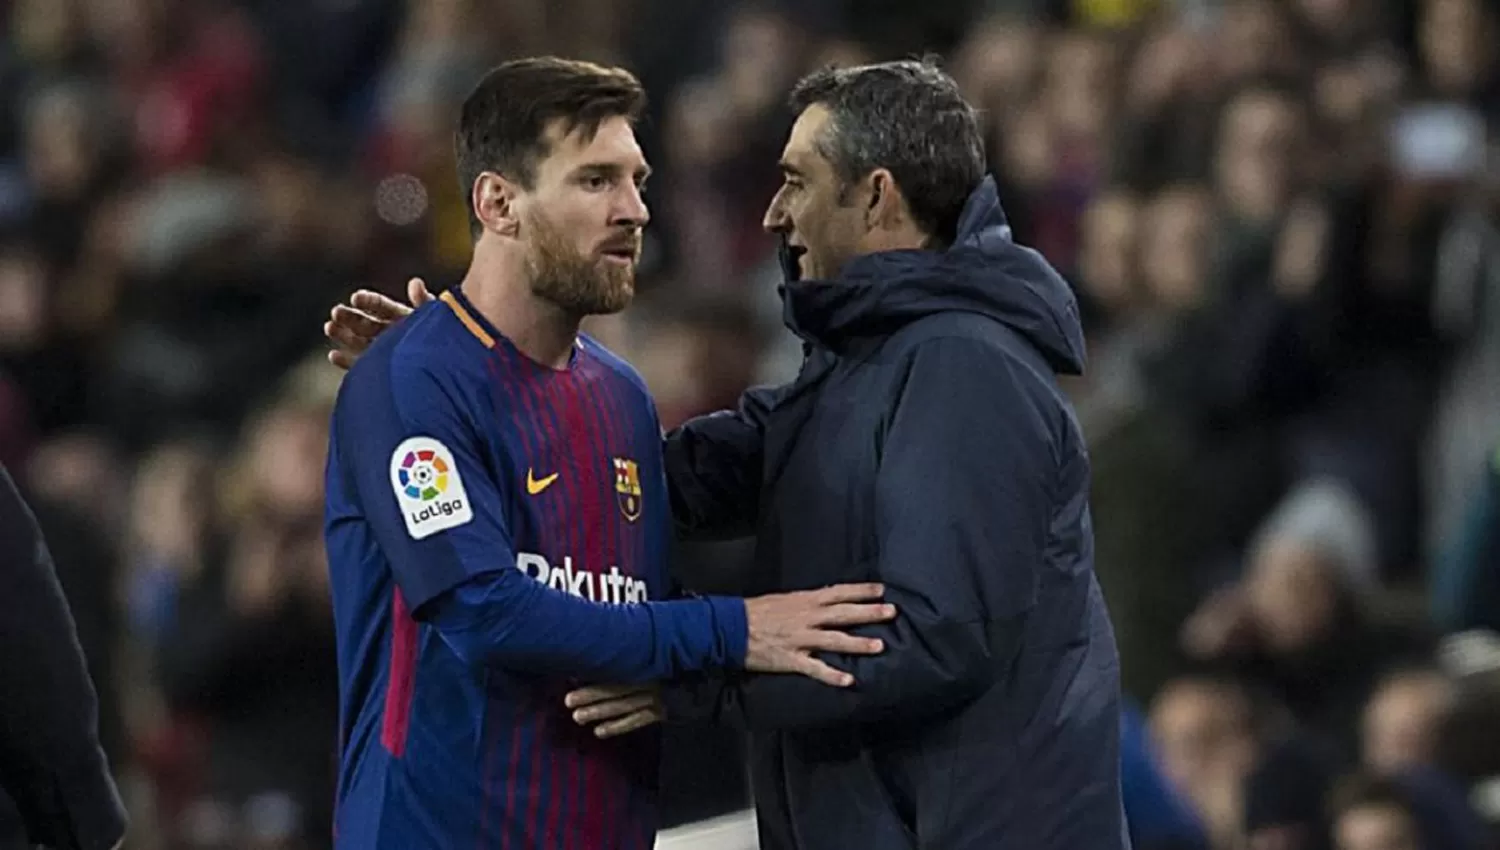 ACÁ NO PASÓ NADA. Valverde aseguró que no discutió con Messi. (ARCHIVO)